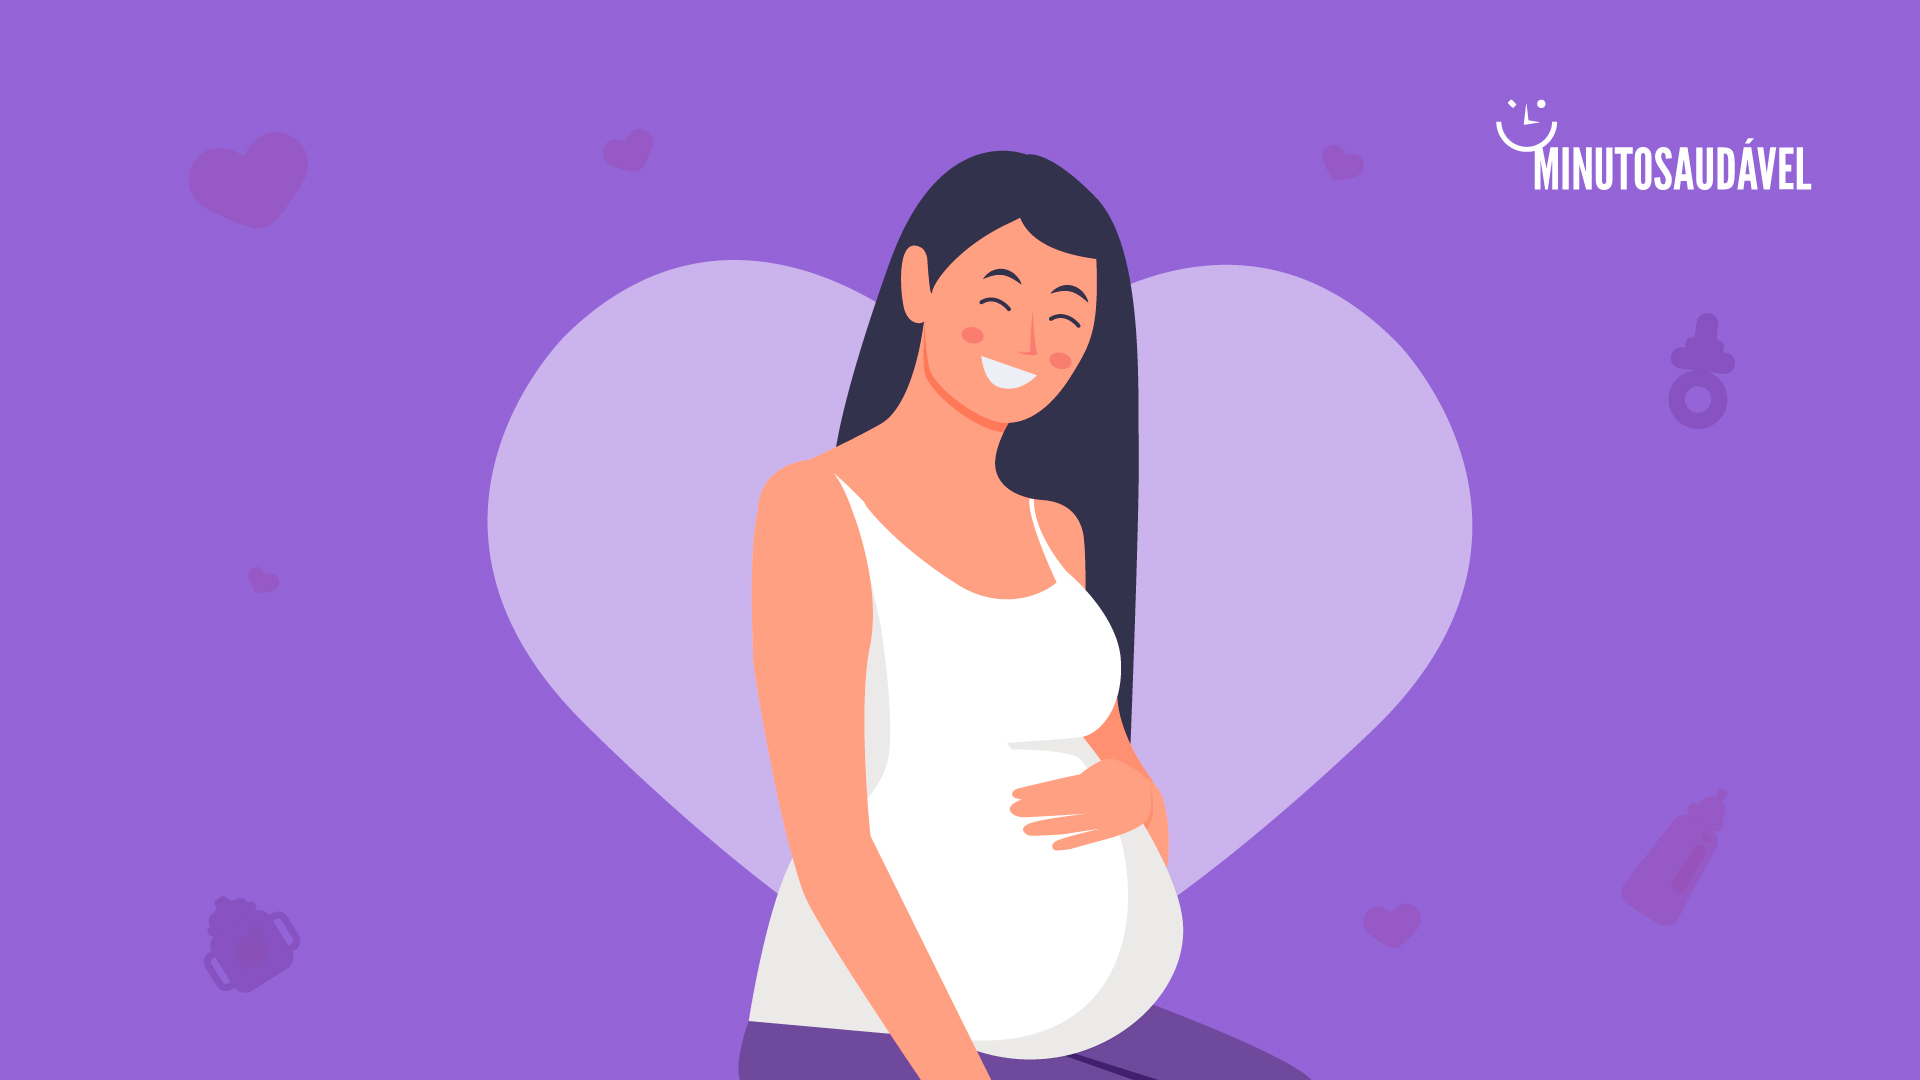 Foto de capa do artigo "38 semanas de gestação: preparando-se para o parto"